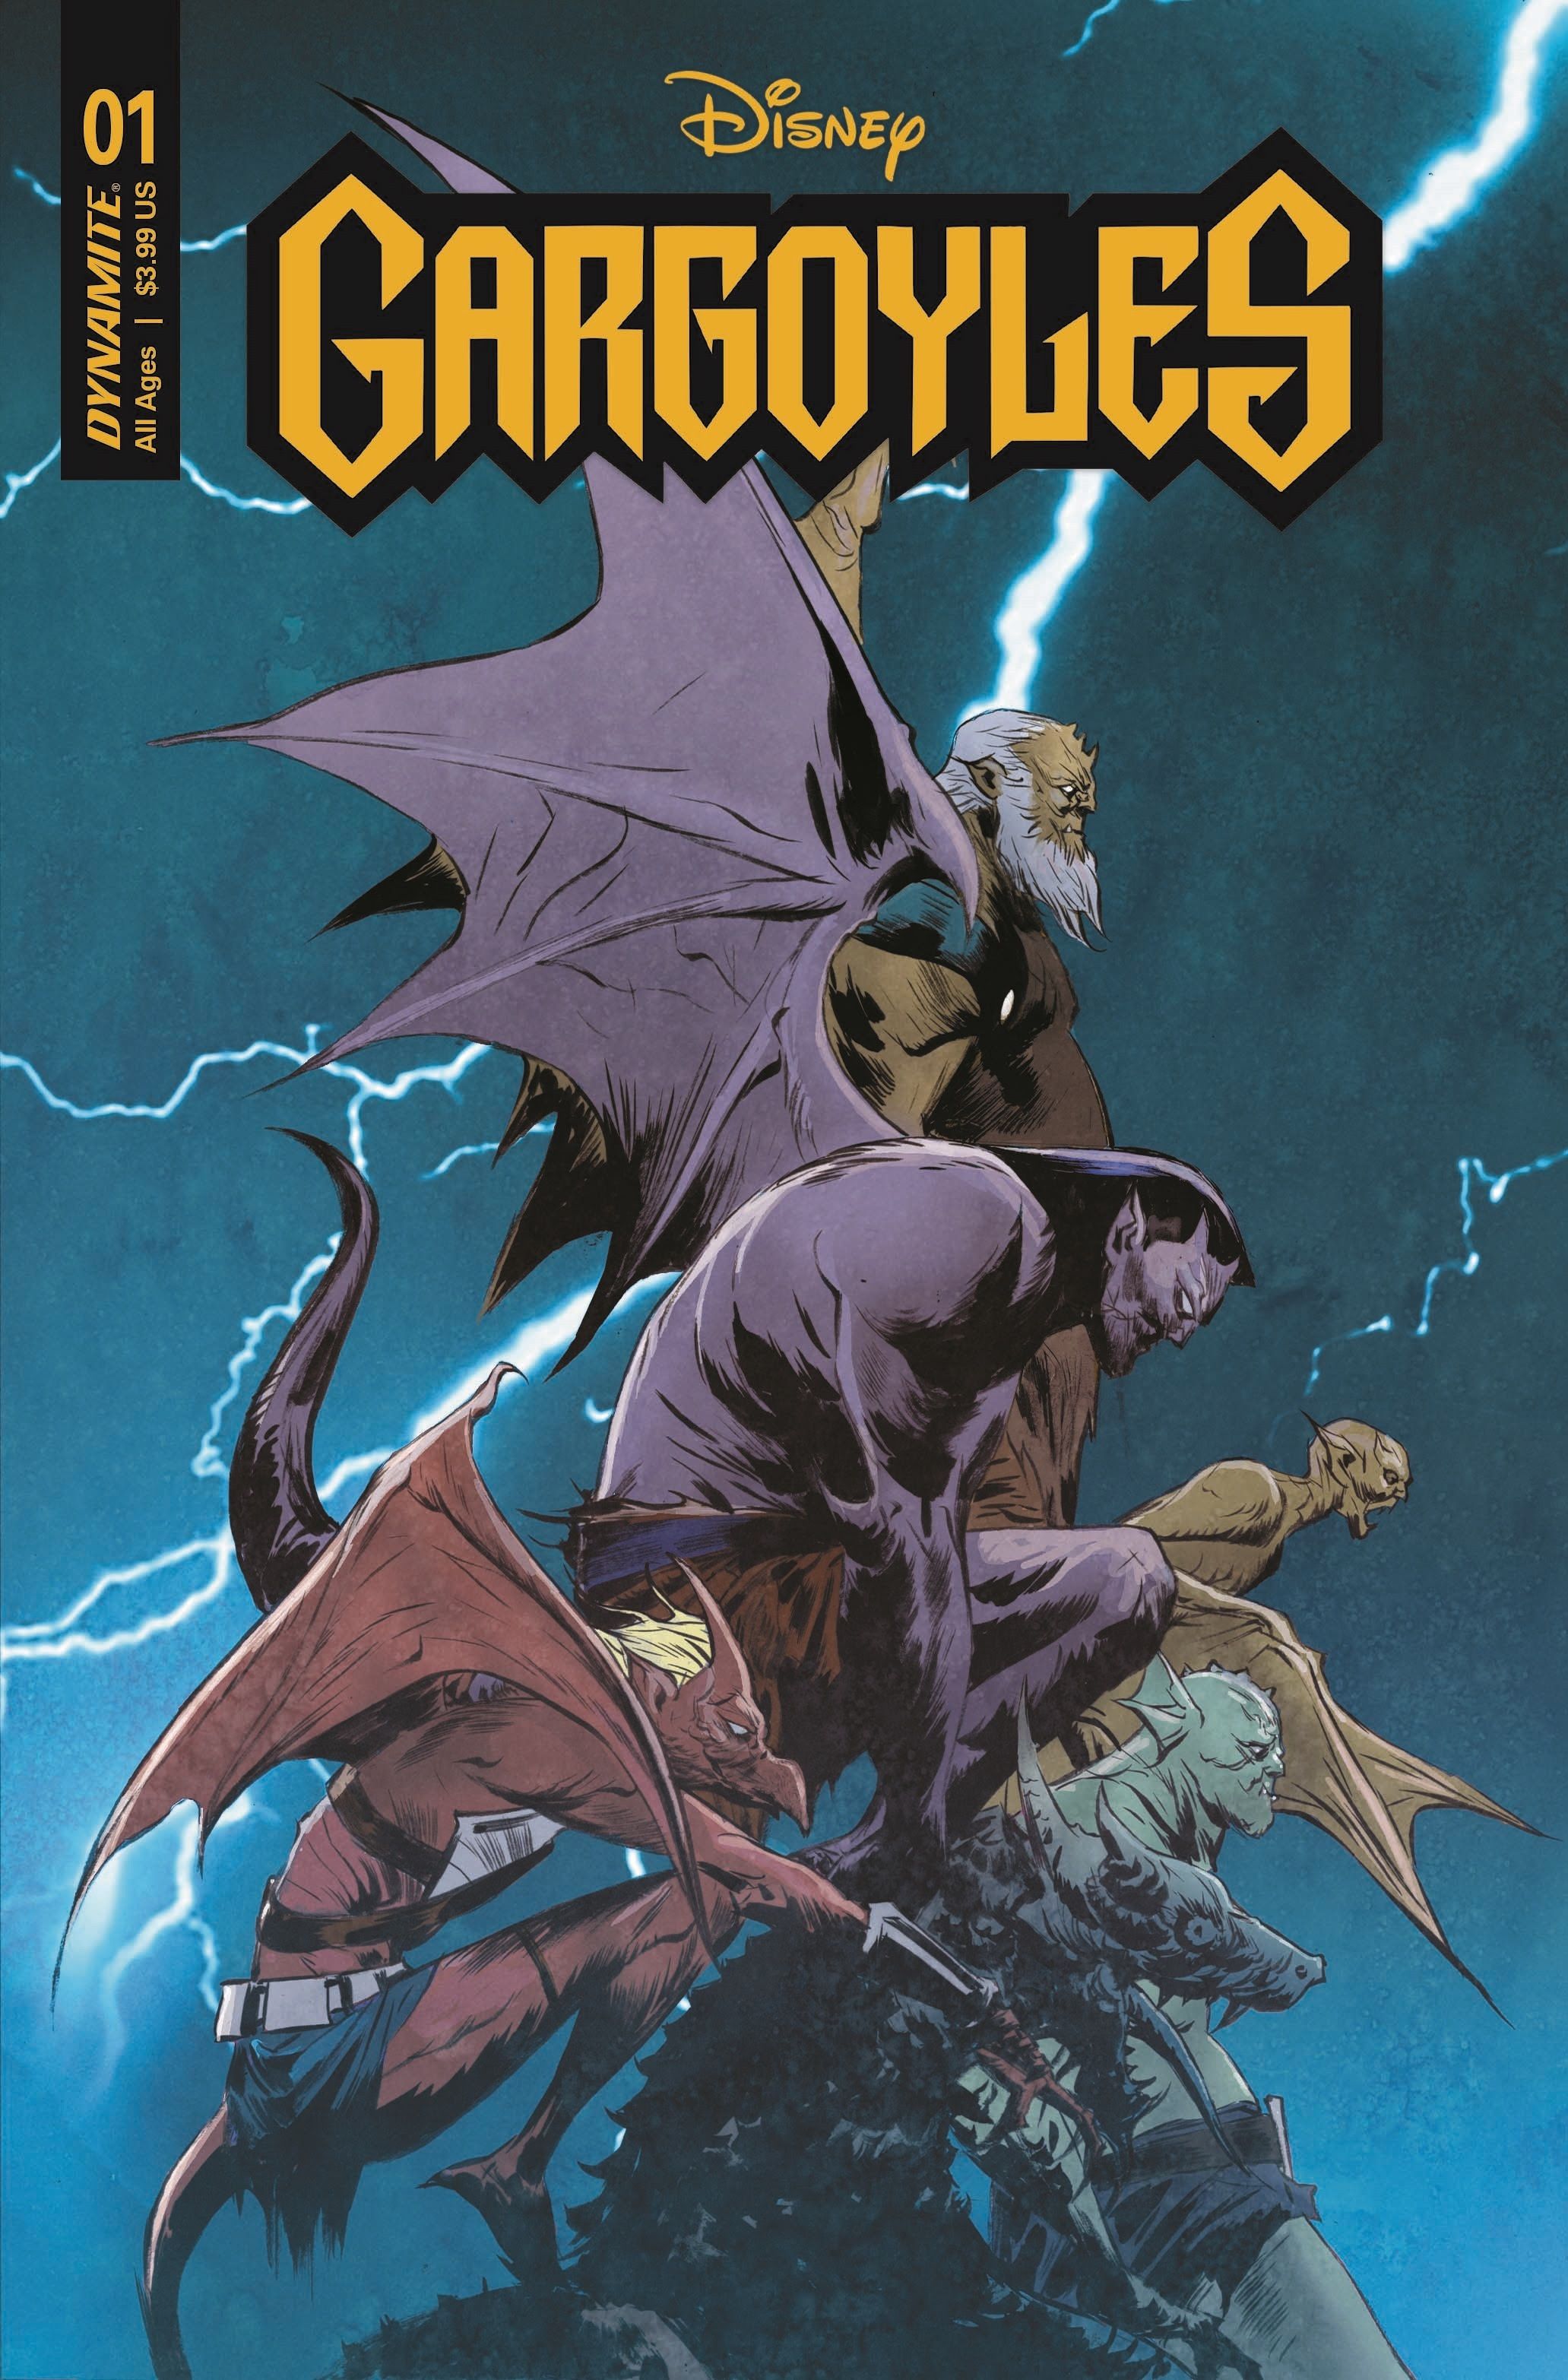 Gárgulas 'Gargoyles' da Disney recruta Jae Lee e mais para capas de primeira edição 11